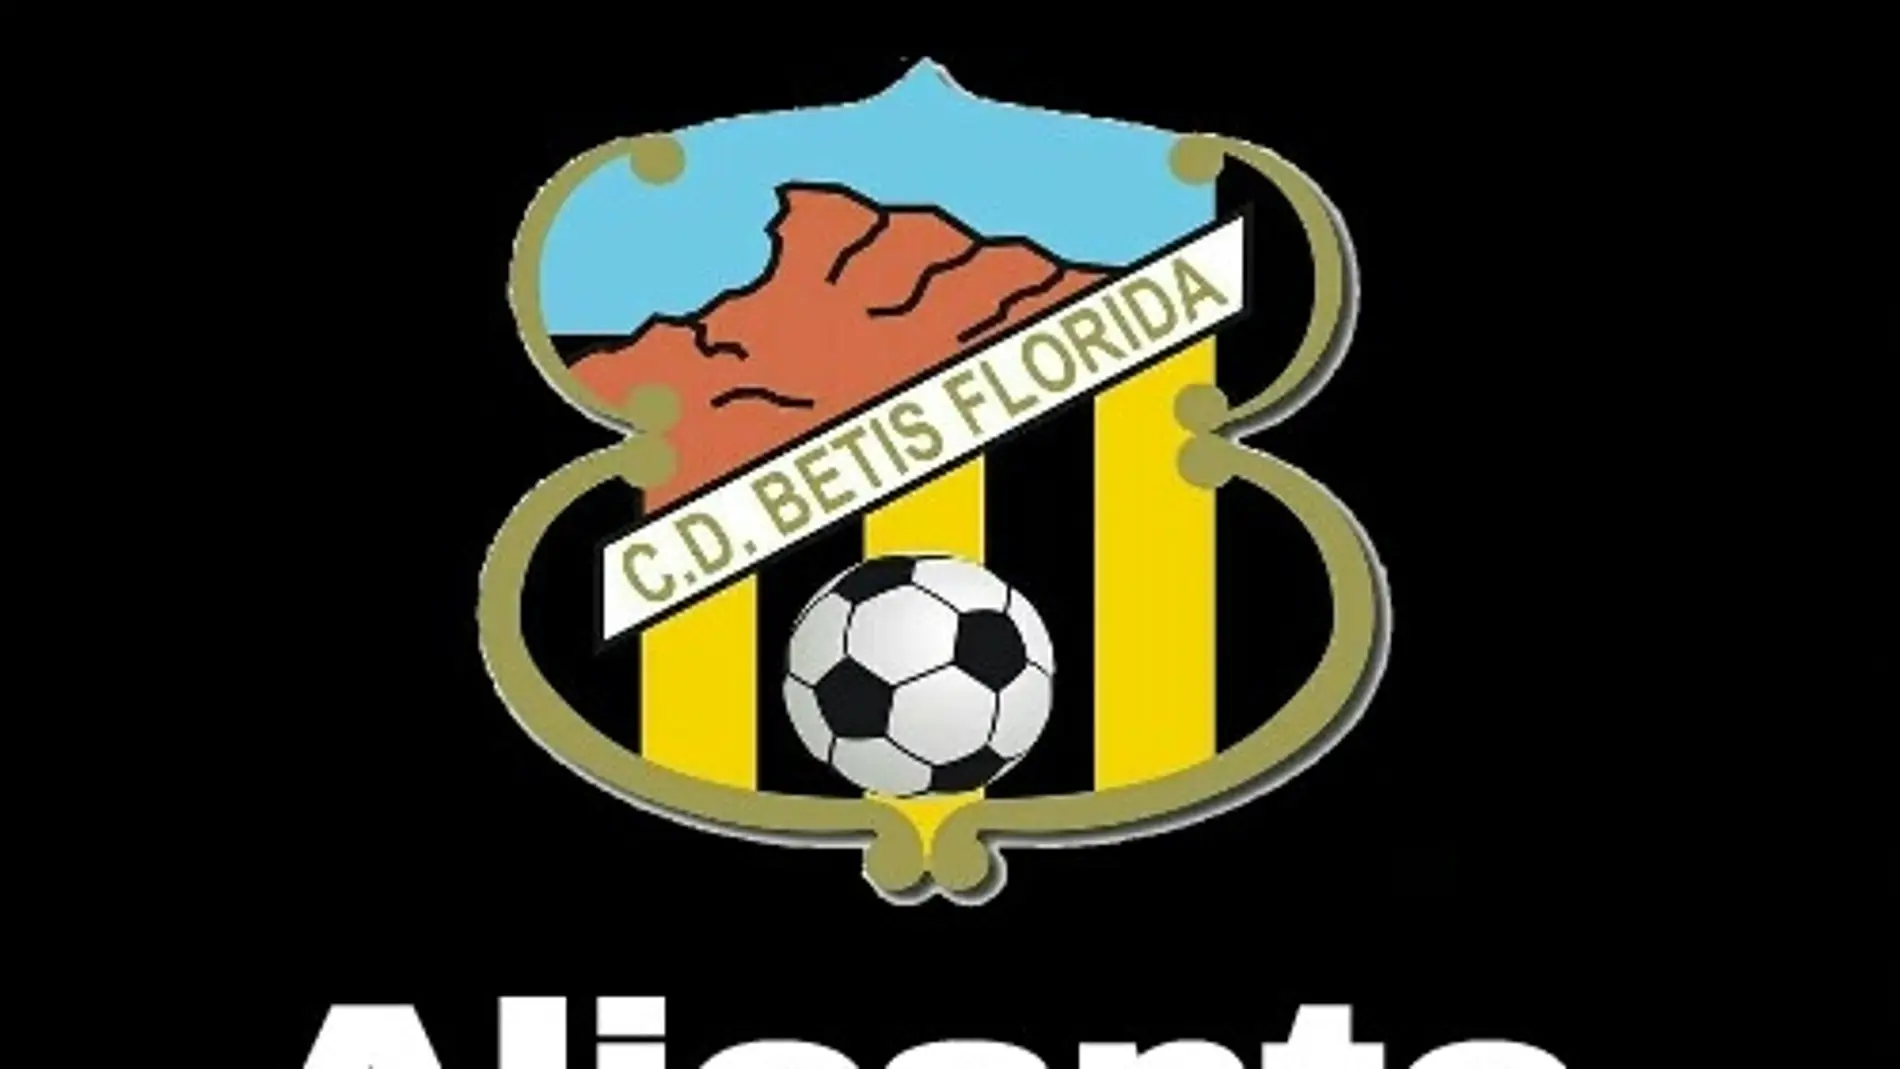 Logotipo del Club 'Betis-Florida' de Alicante